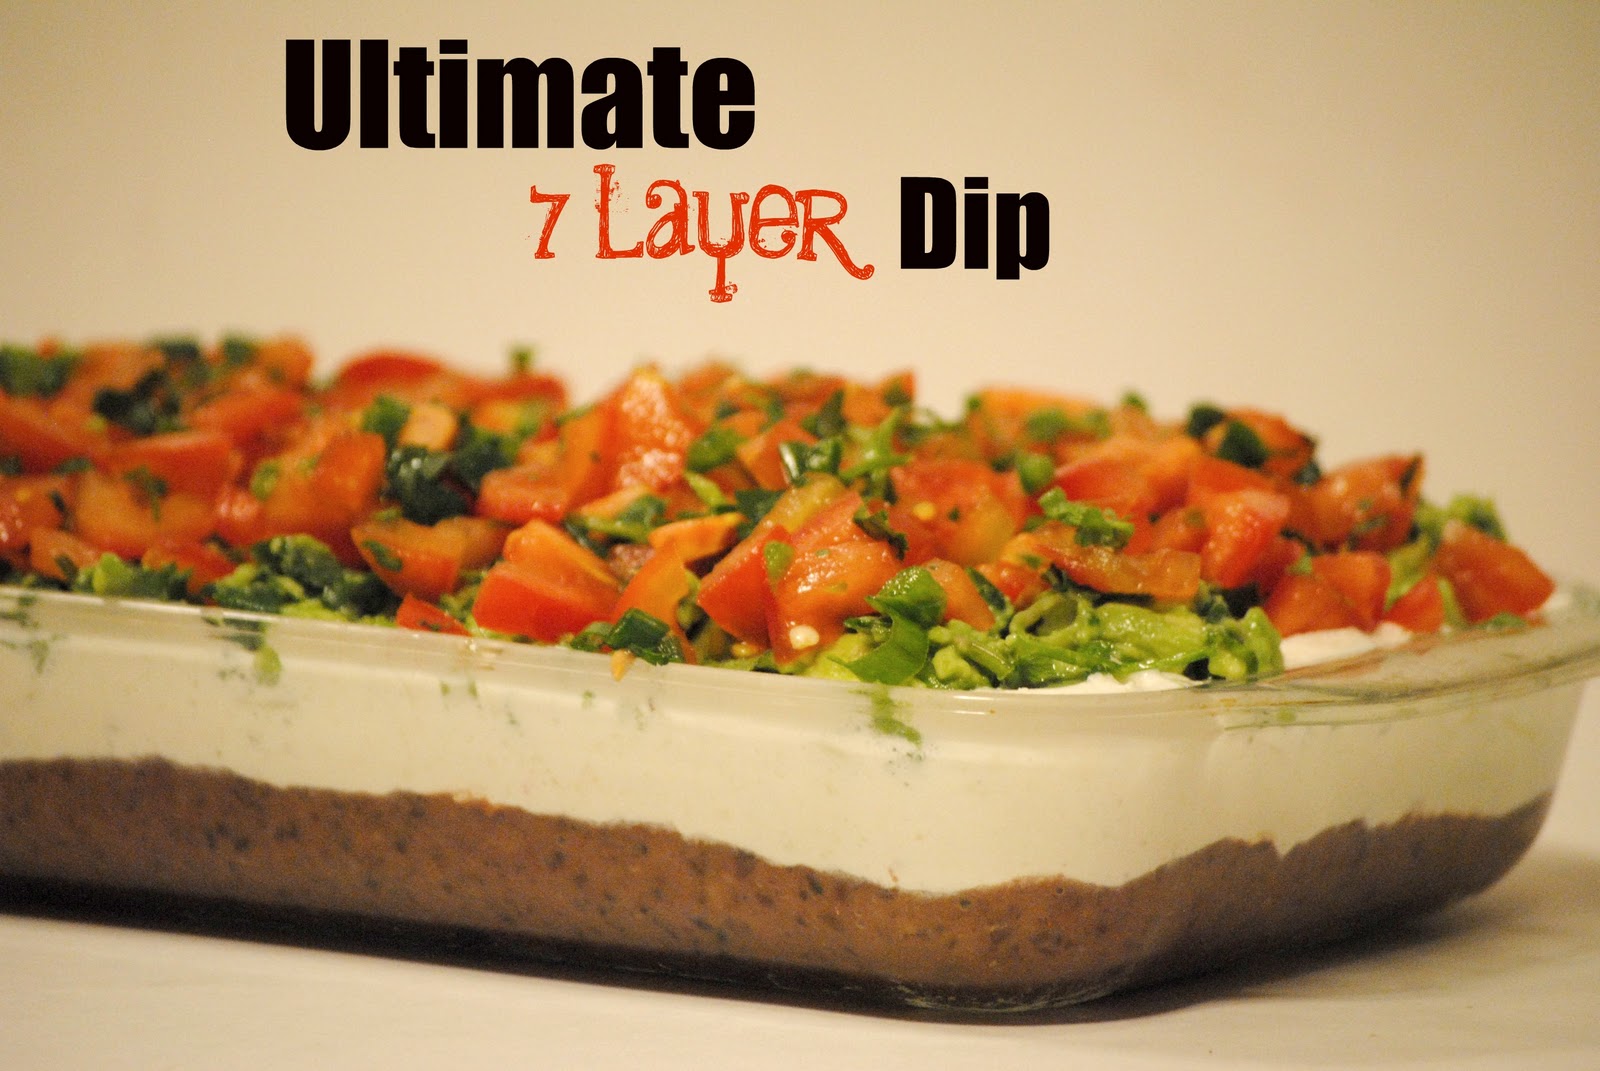 Ultimate 7 Layer Dip2 